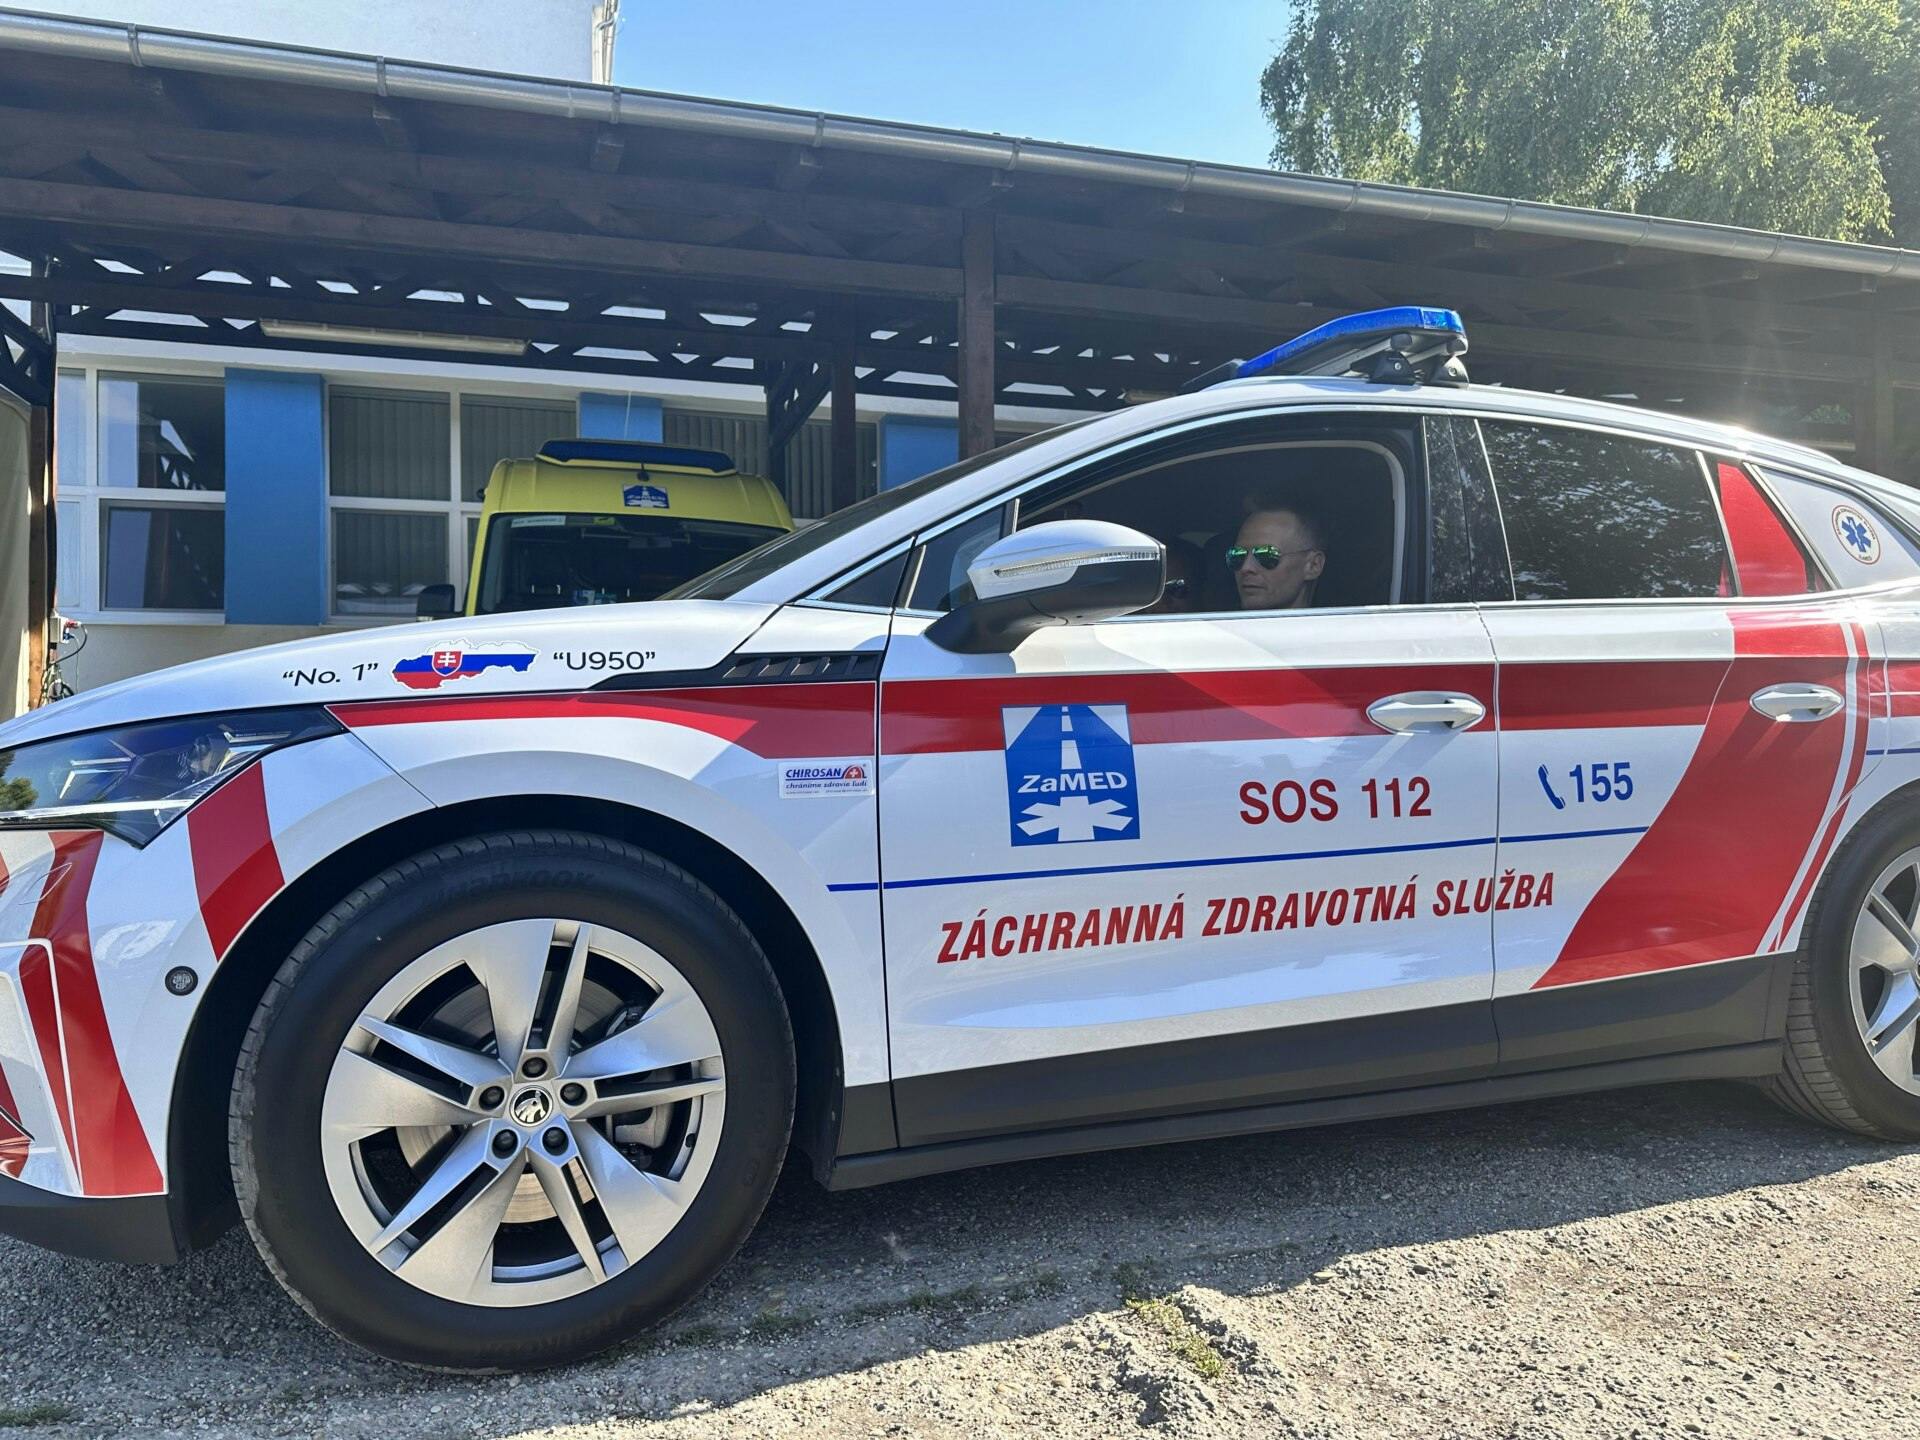 Škoda Enyaq bude nasadená u záchranárov už aj na ostré zásahy v testovacom režime, v ich službách má za sebou prvý úspešný rok